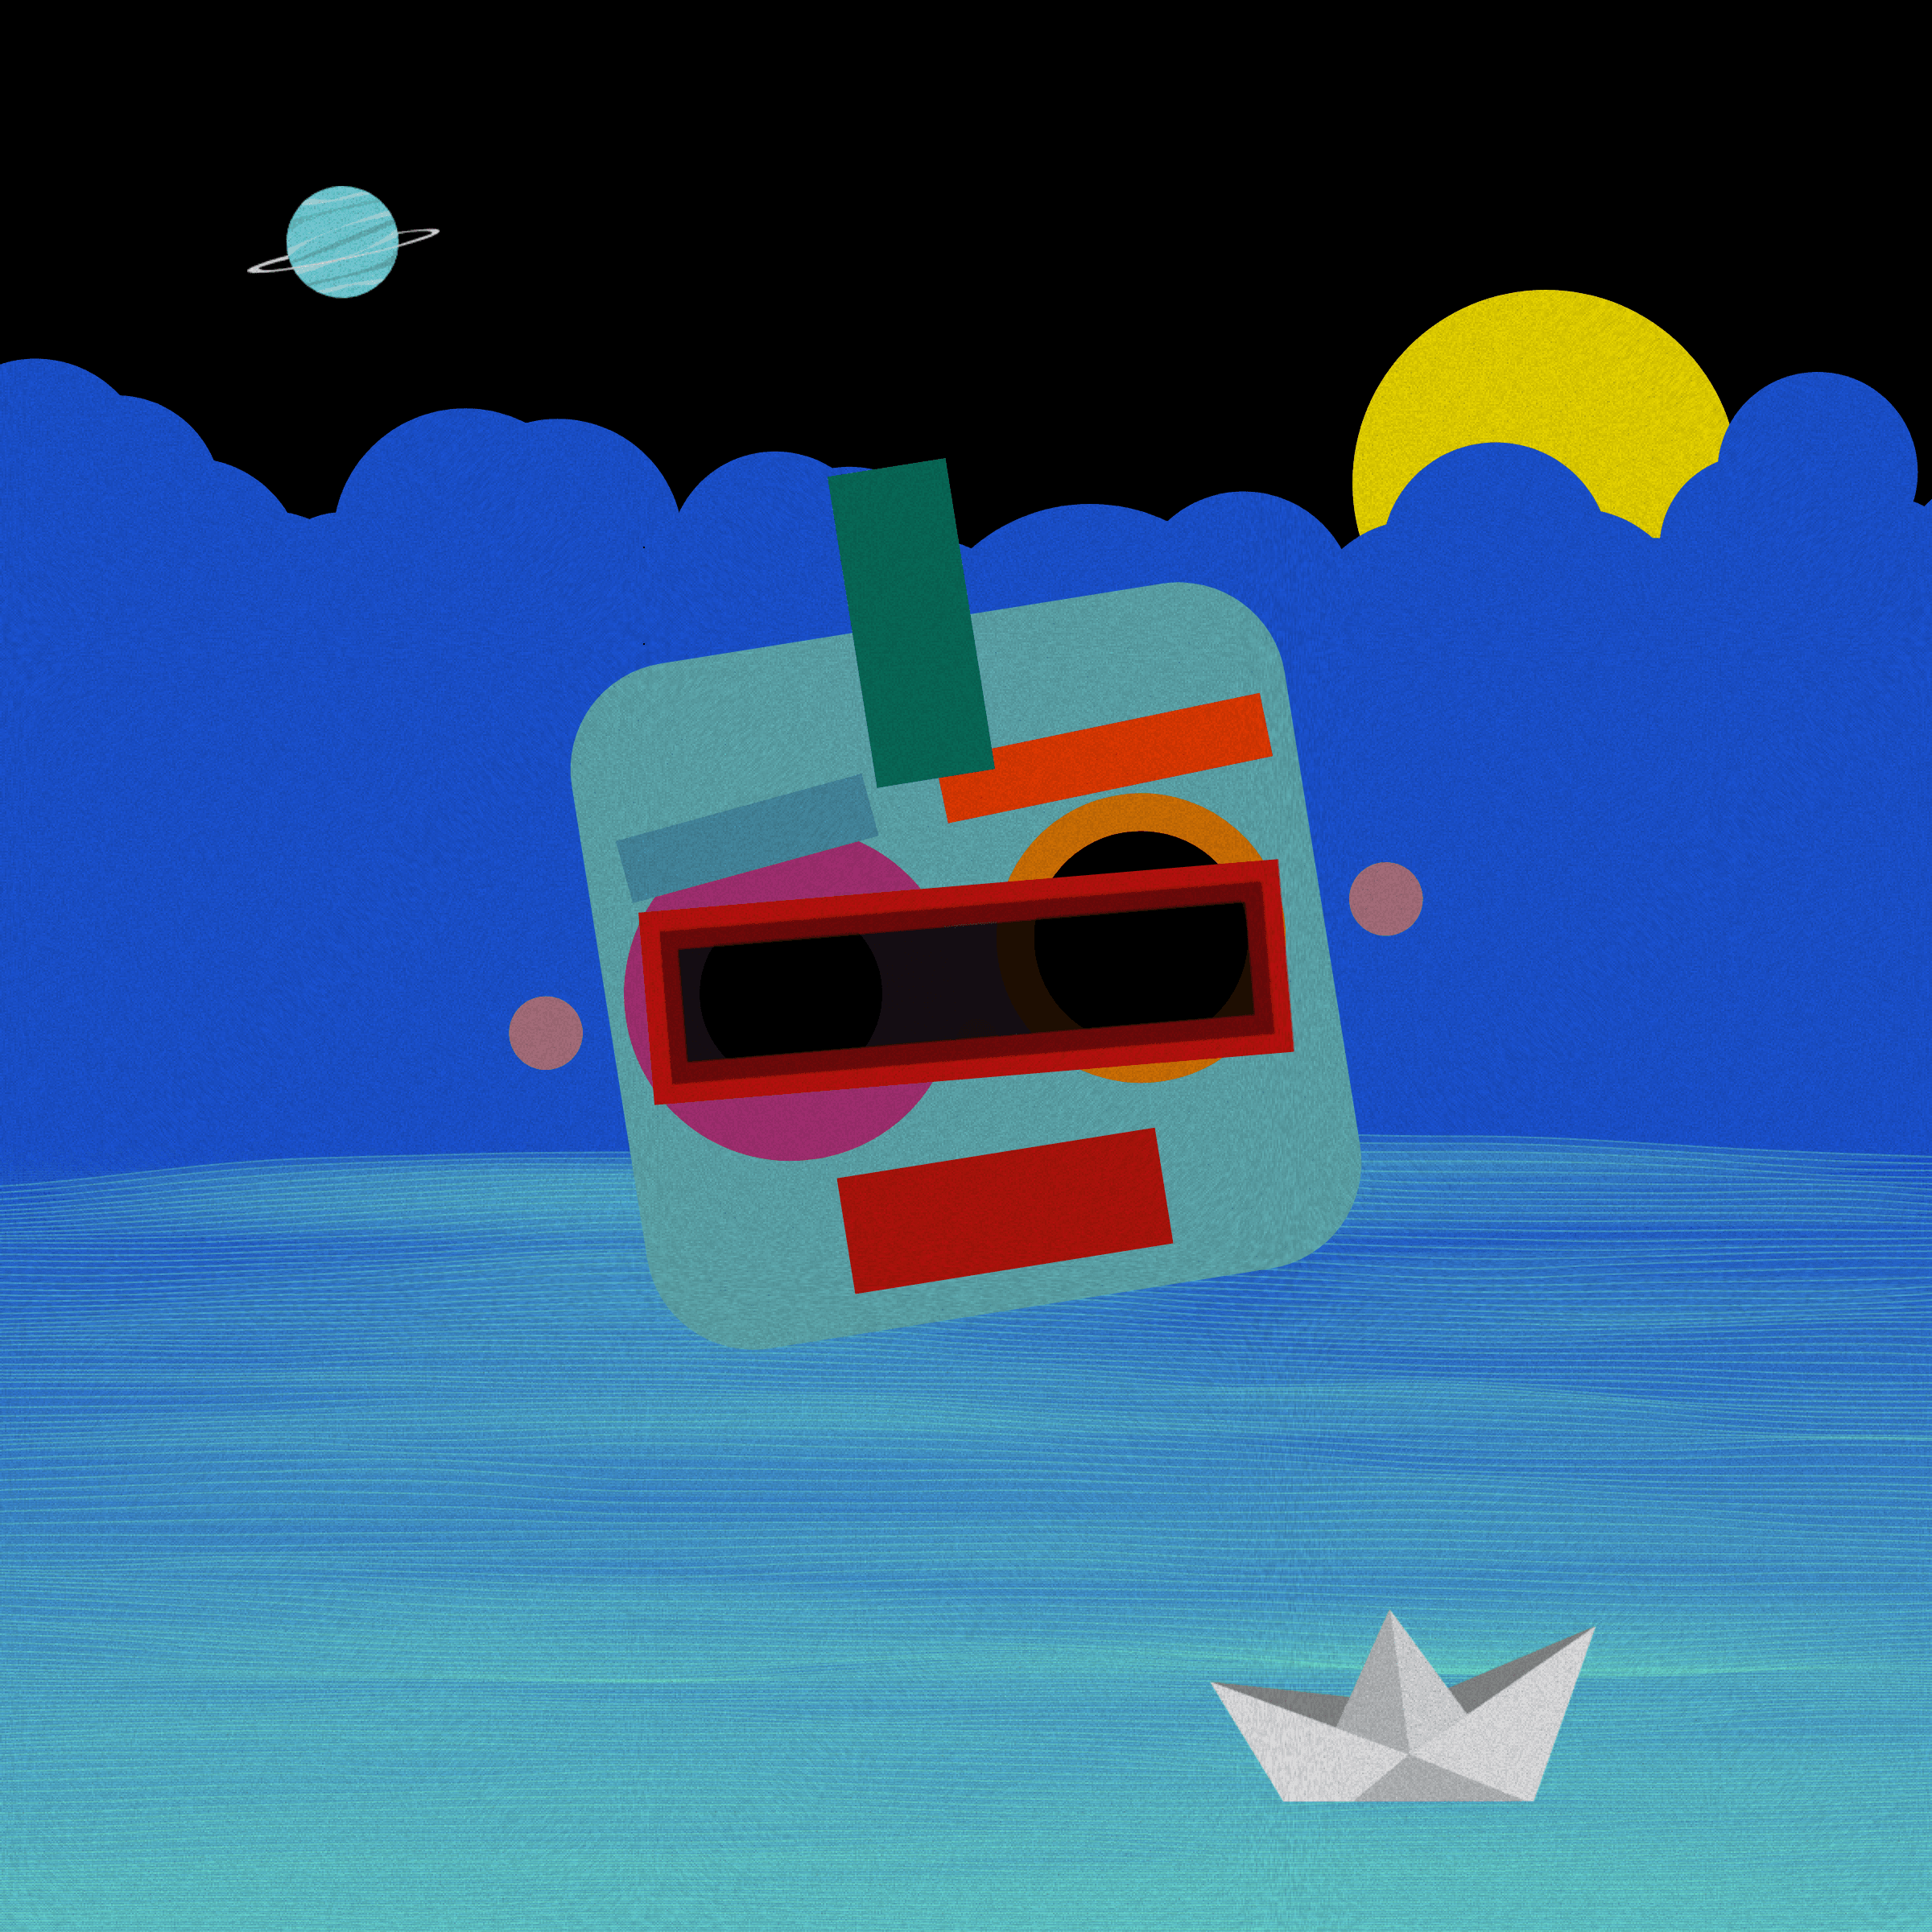 sail-o-bots #662